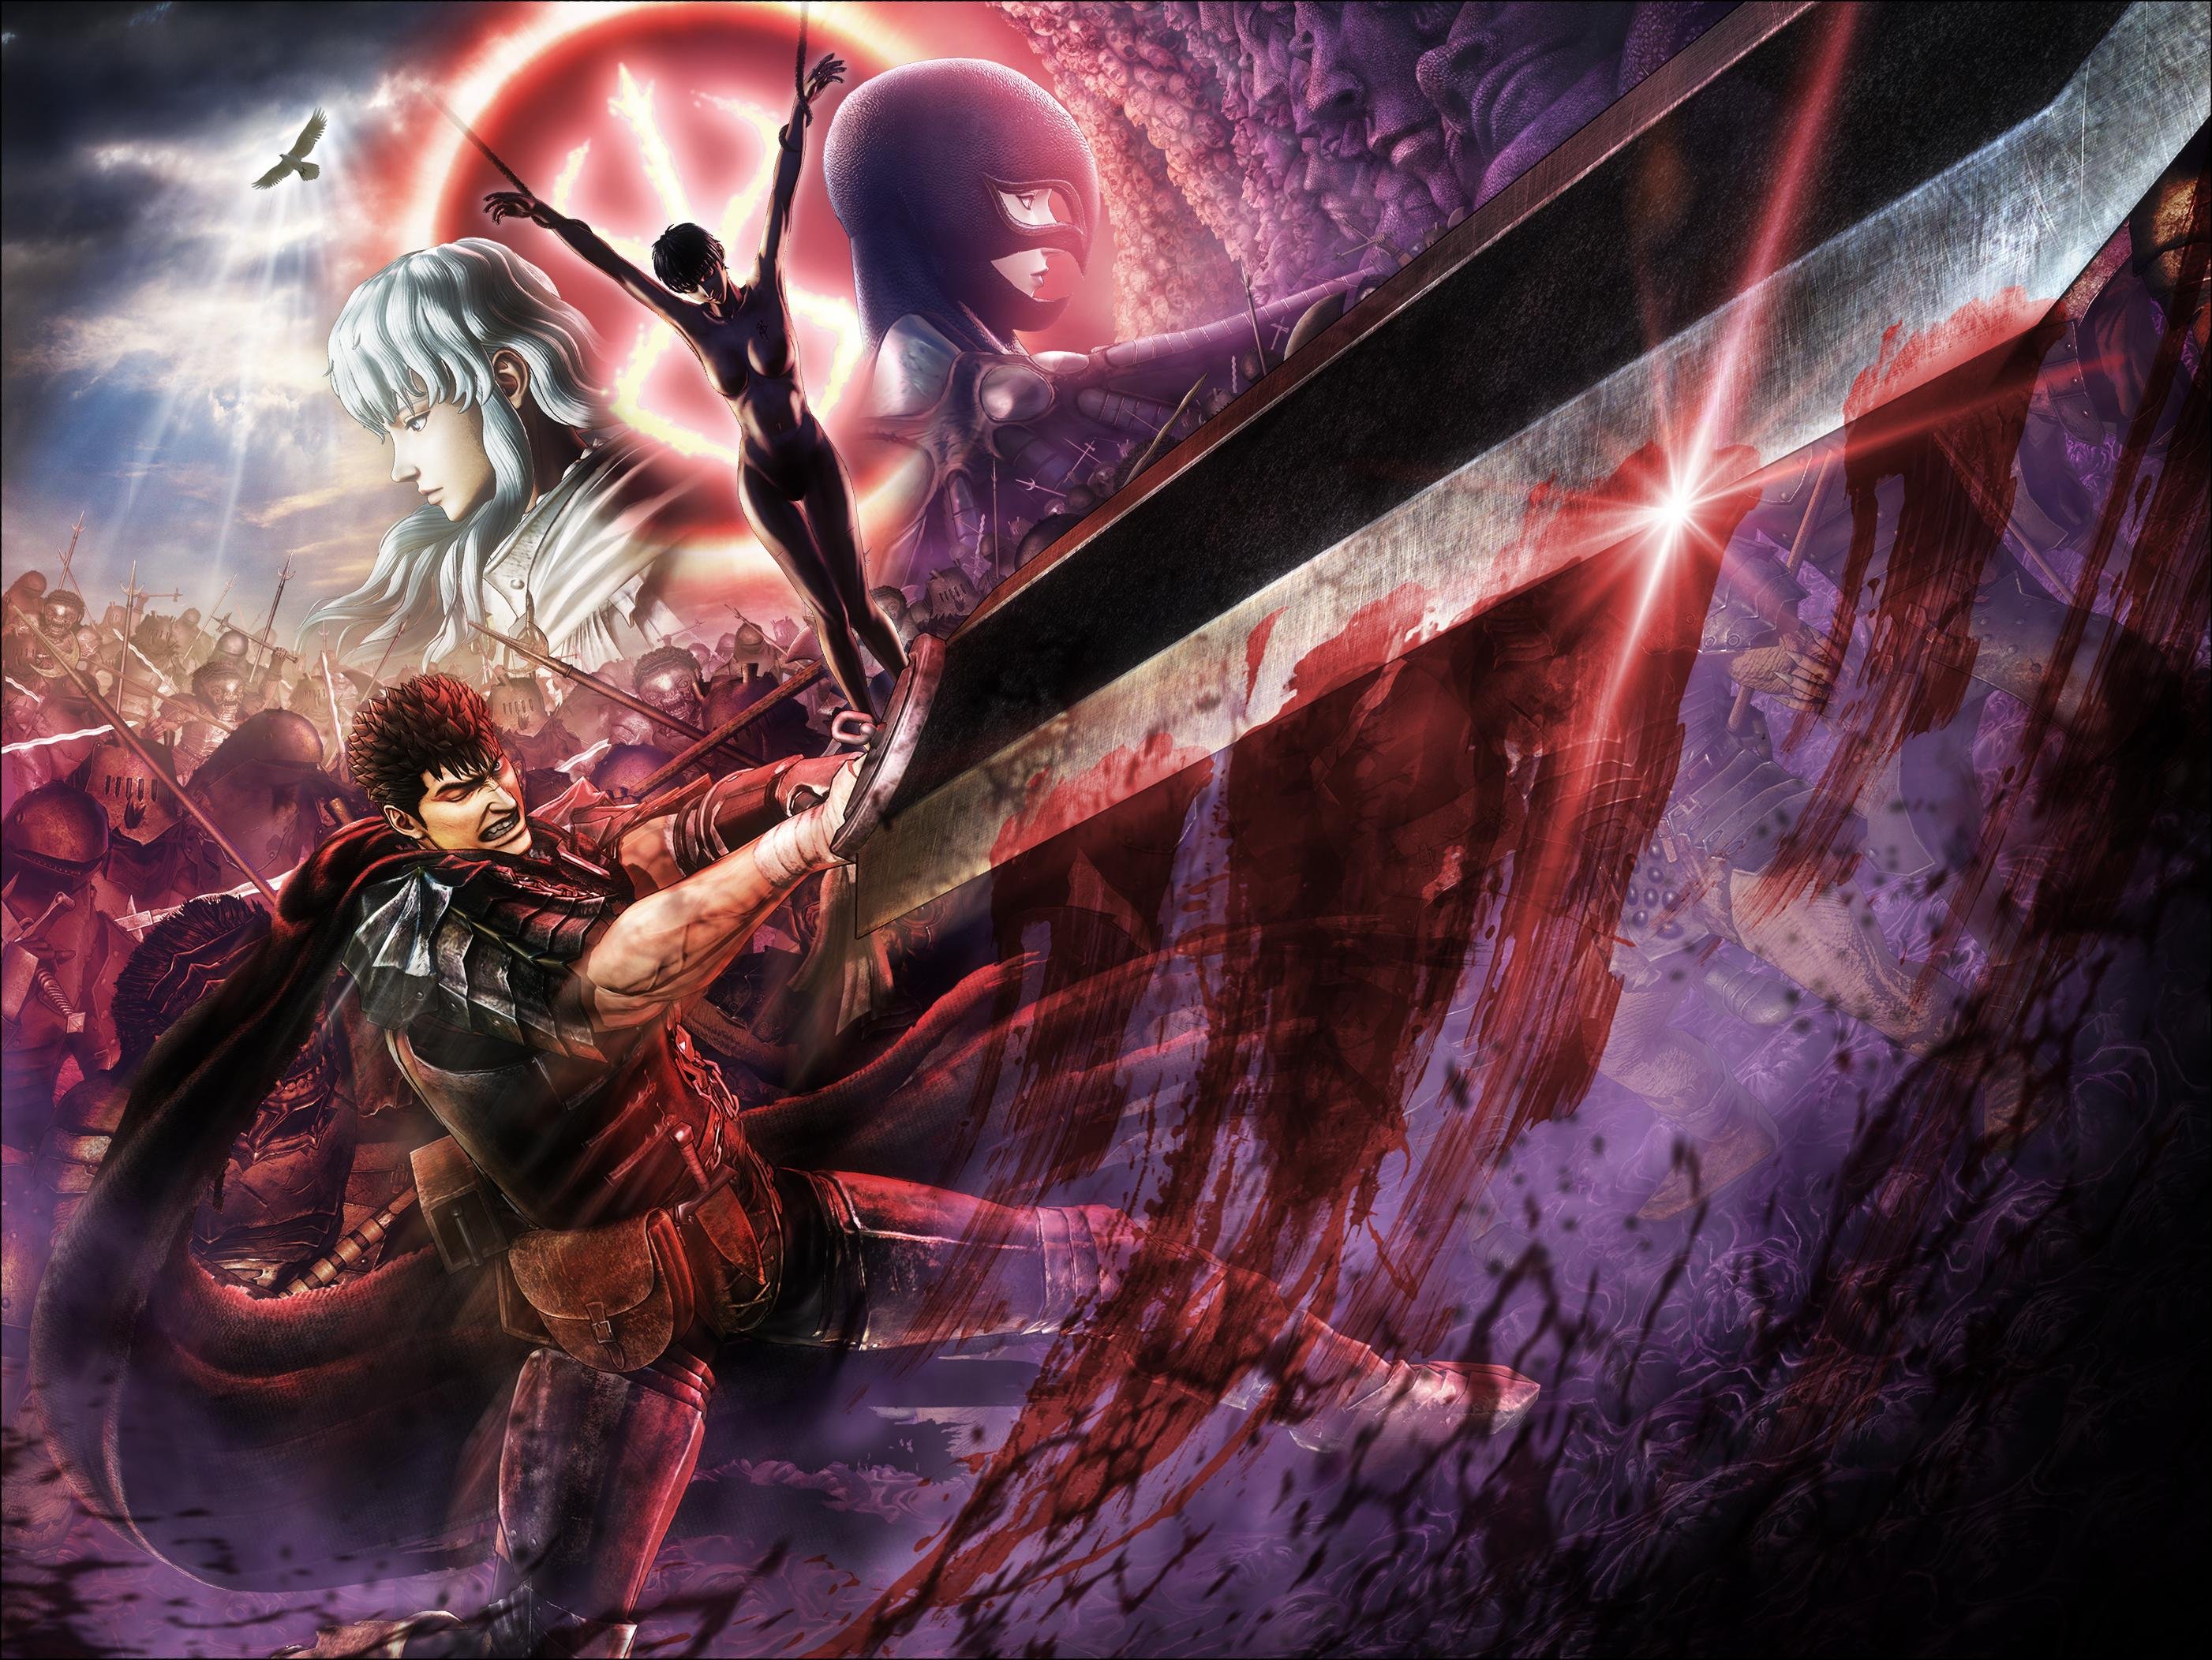 Koei Tecmo anuncia que Berserk se lanzará en otoño en Europa para PS4 y PS Vita